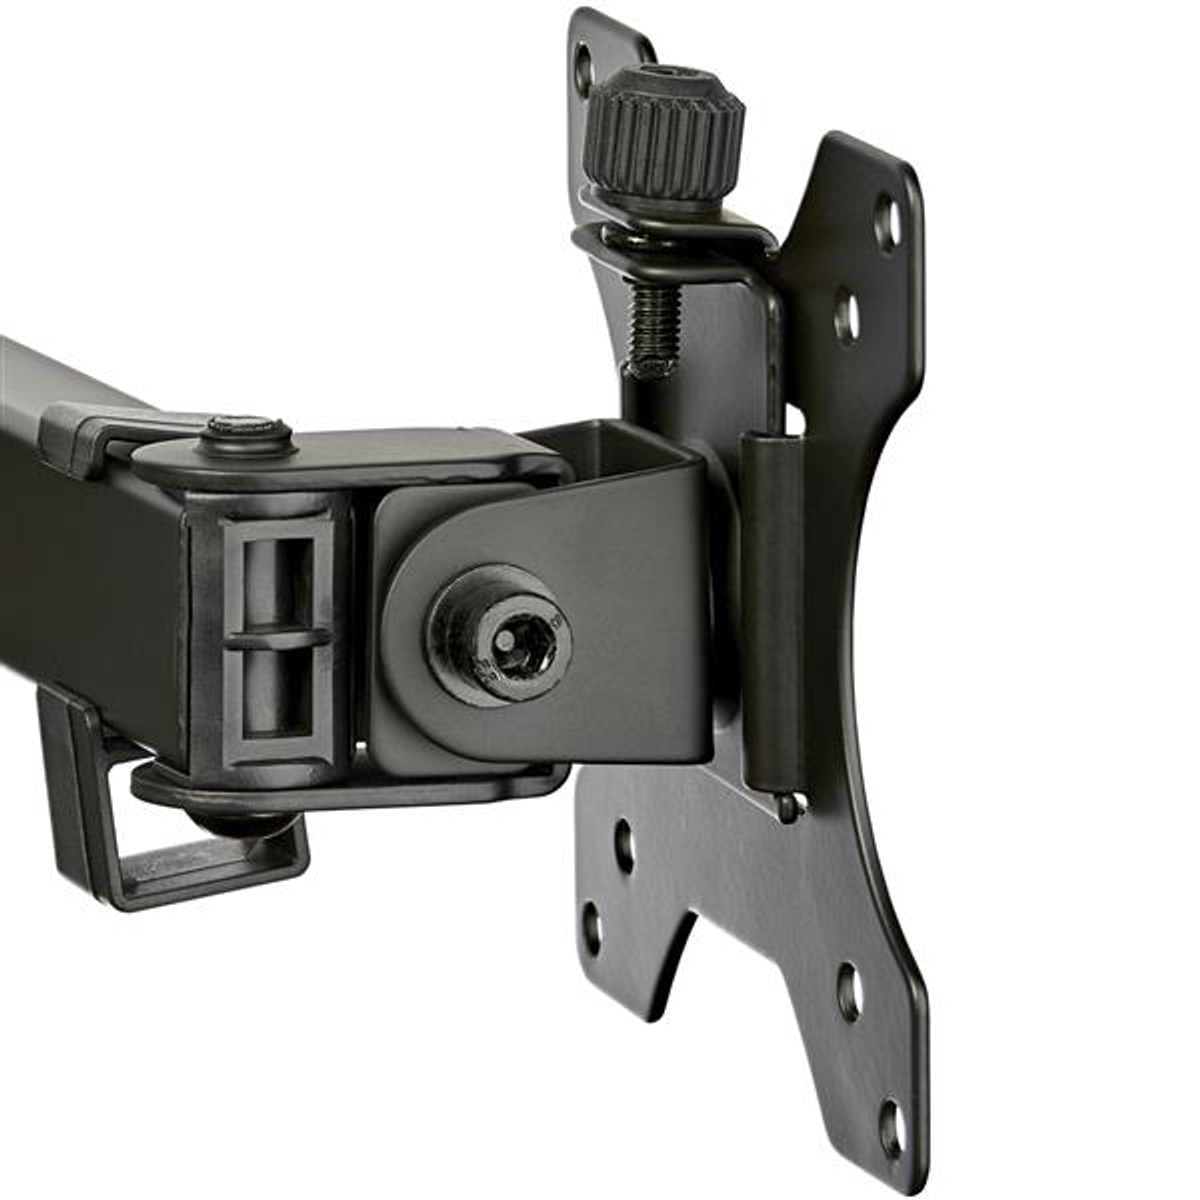 Monitor Arm - Dual - Crossbar - Steel